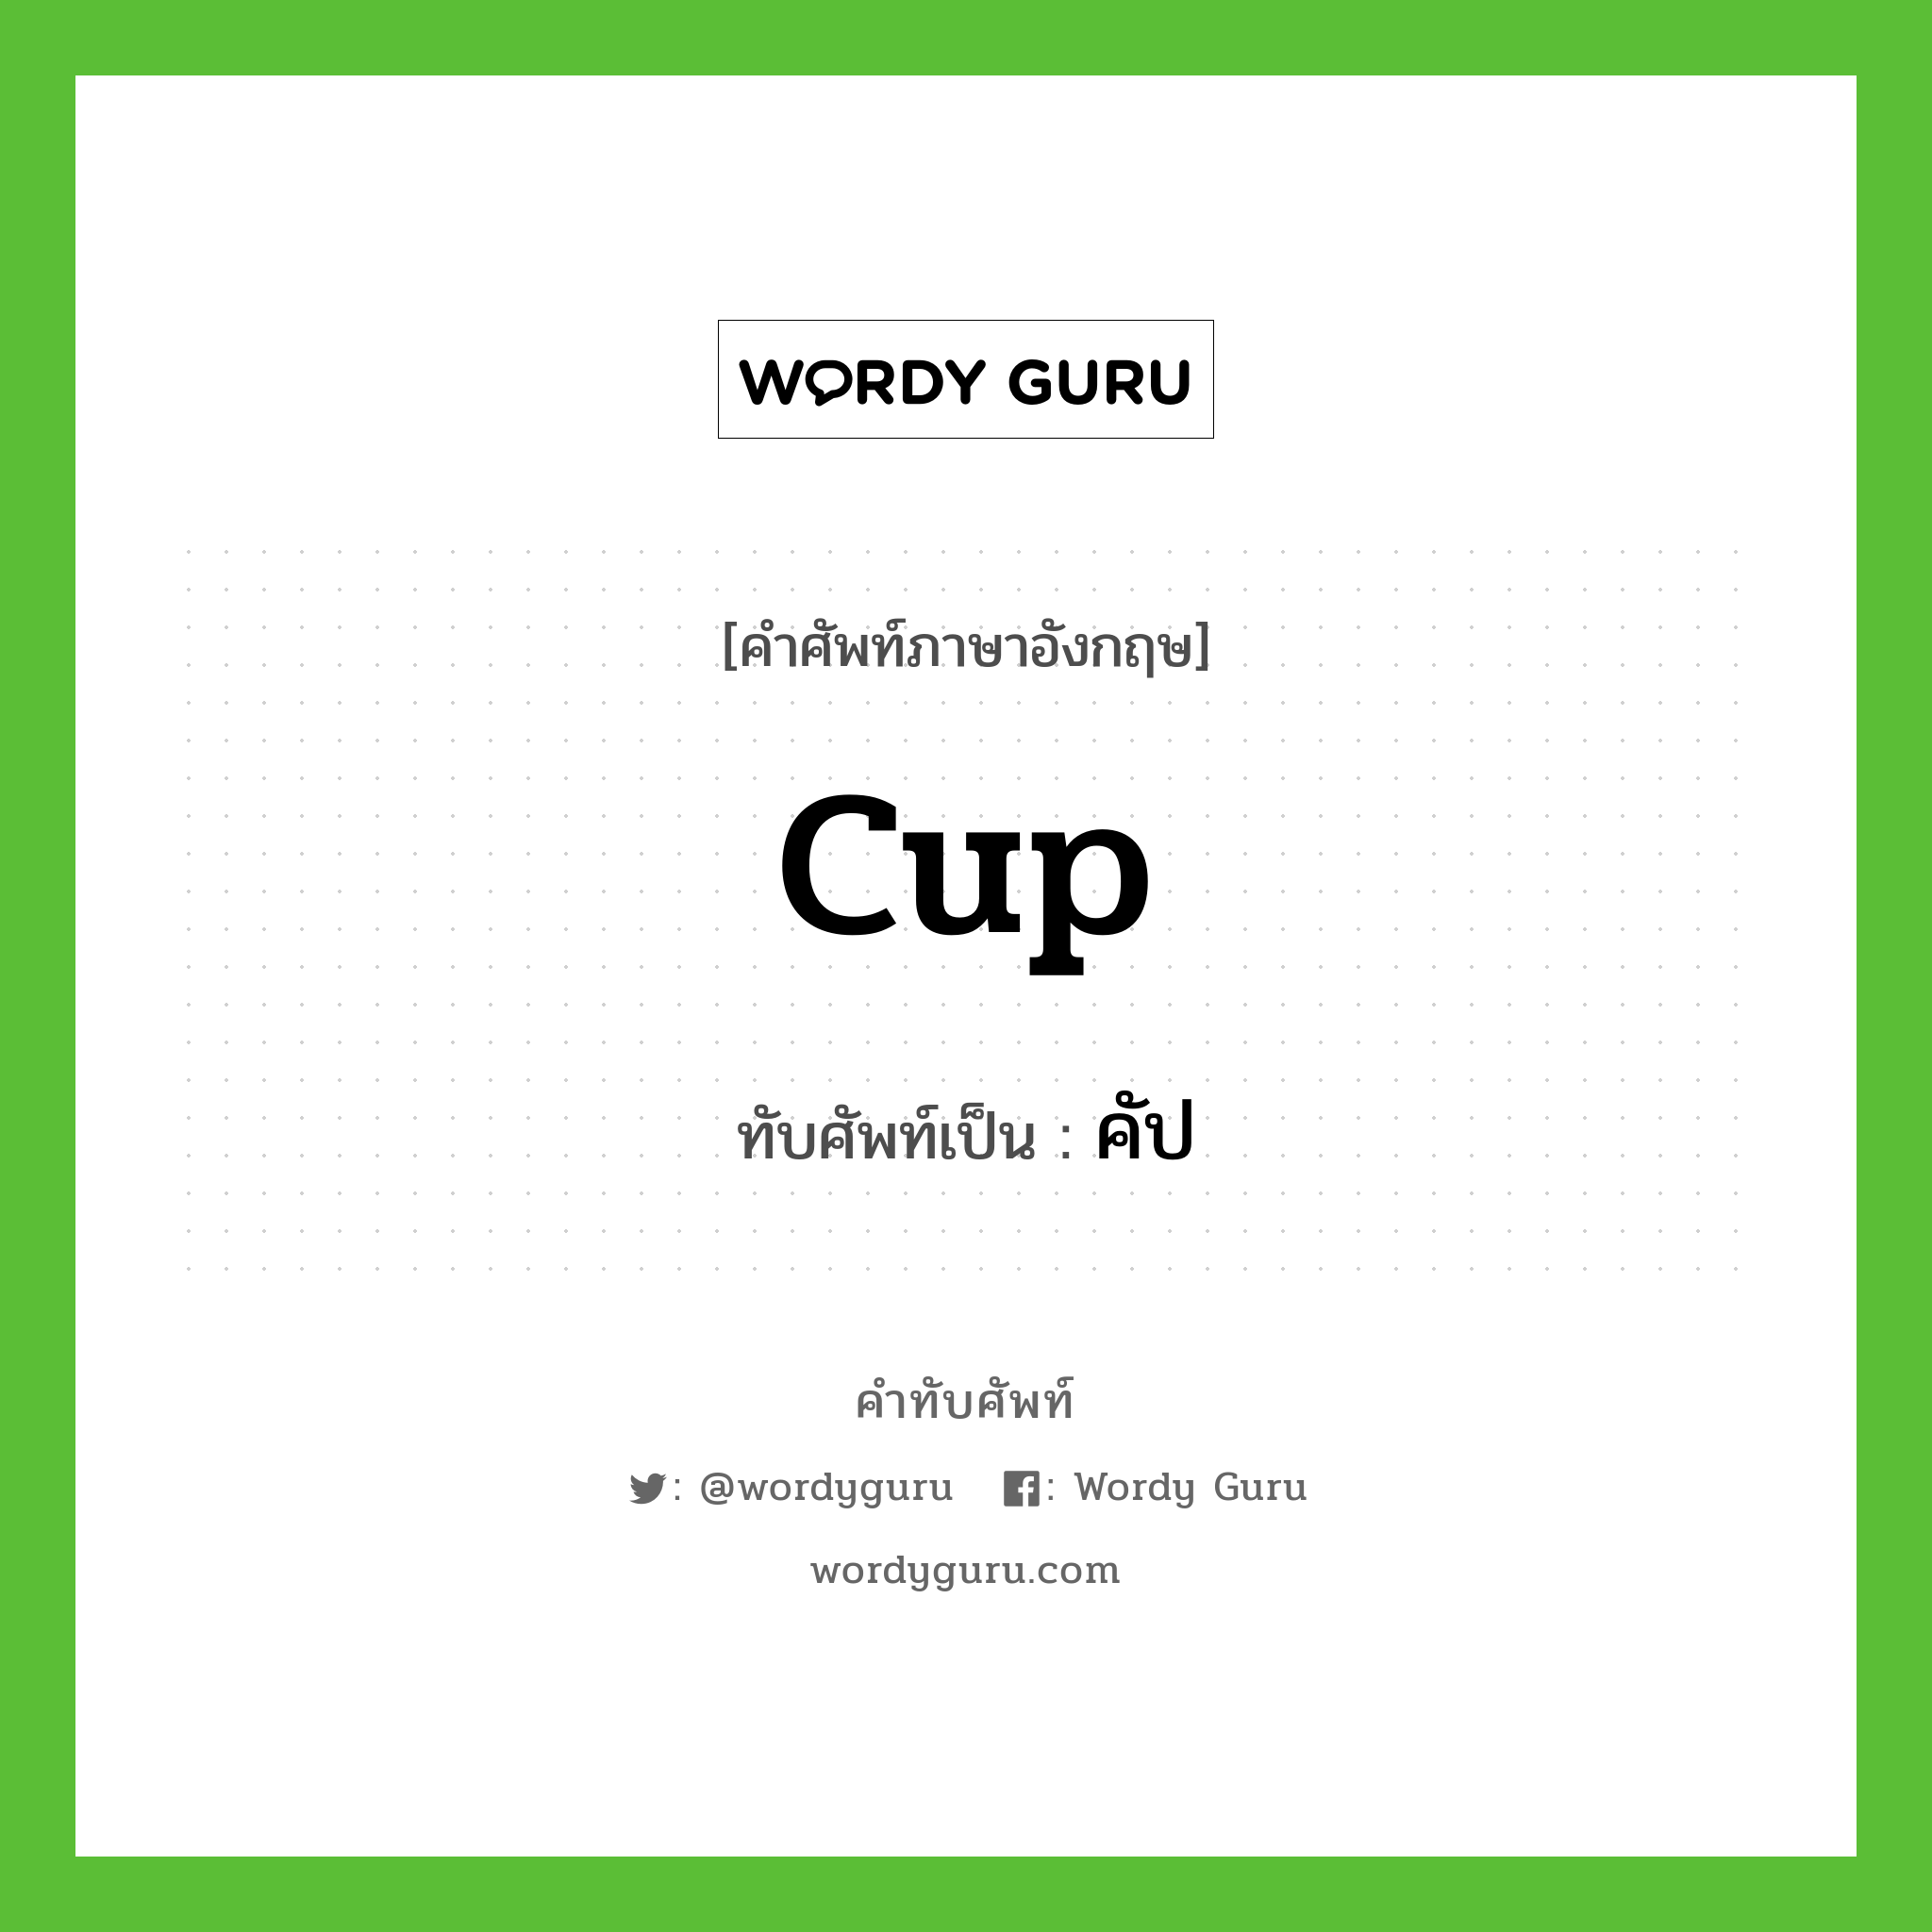 cup เขียนเป็นคำไทยว่าอะไร?, คำศัพท์ภาษาอังกฤษ cup ทับศัพท์เป็น คัป